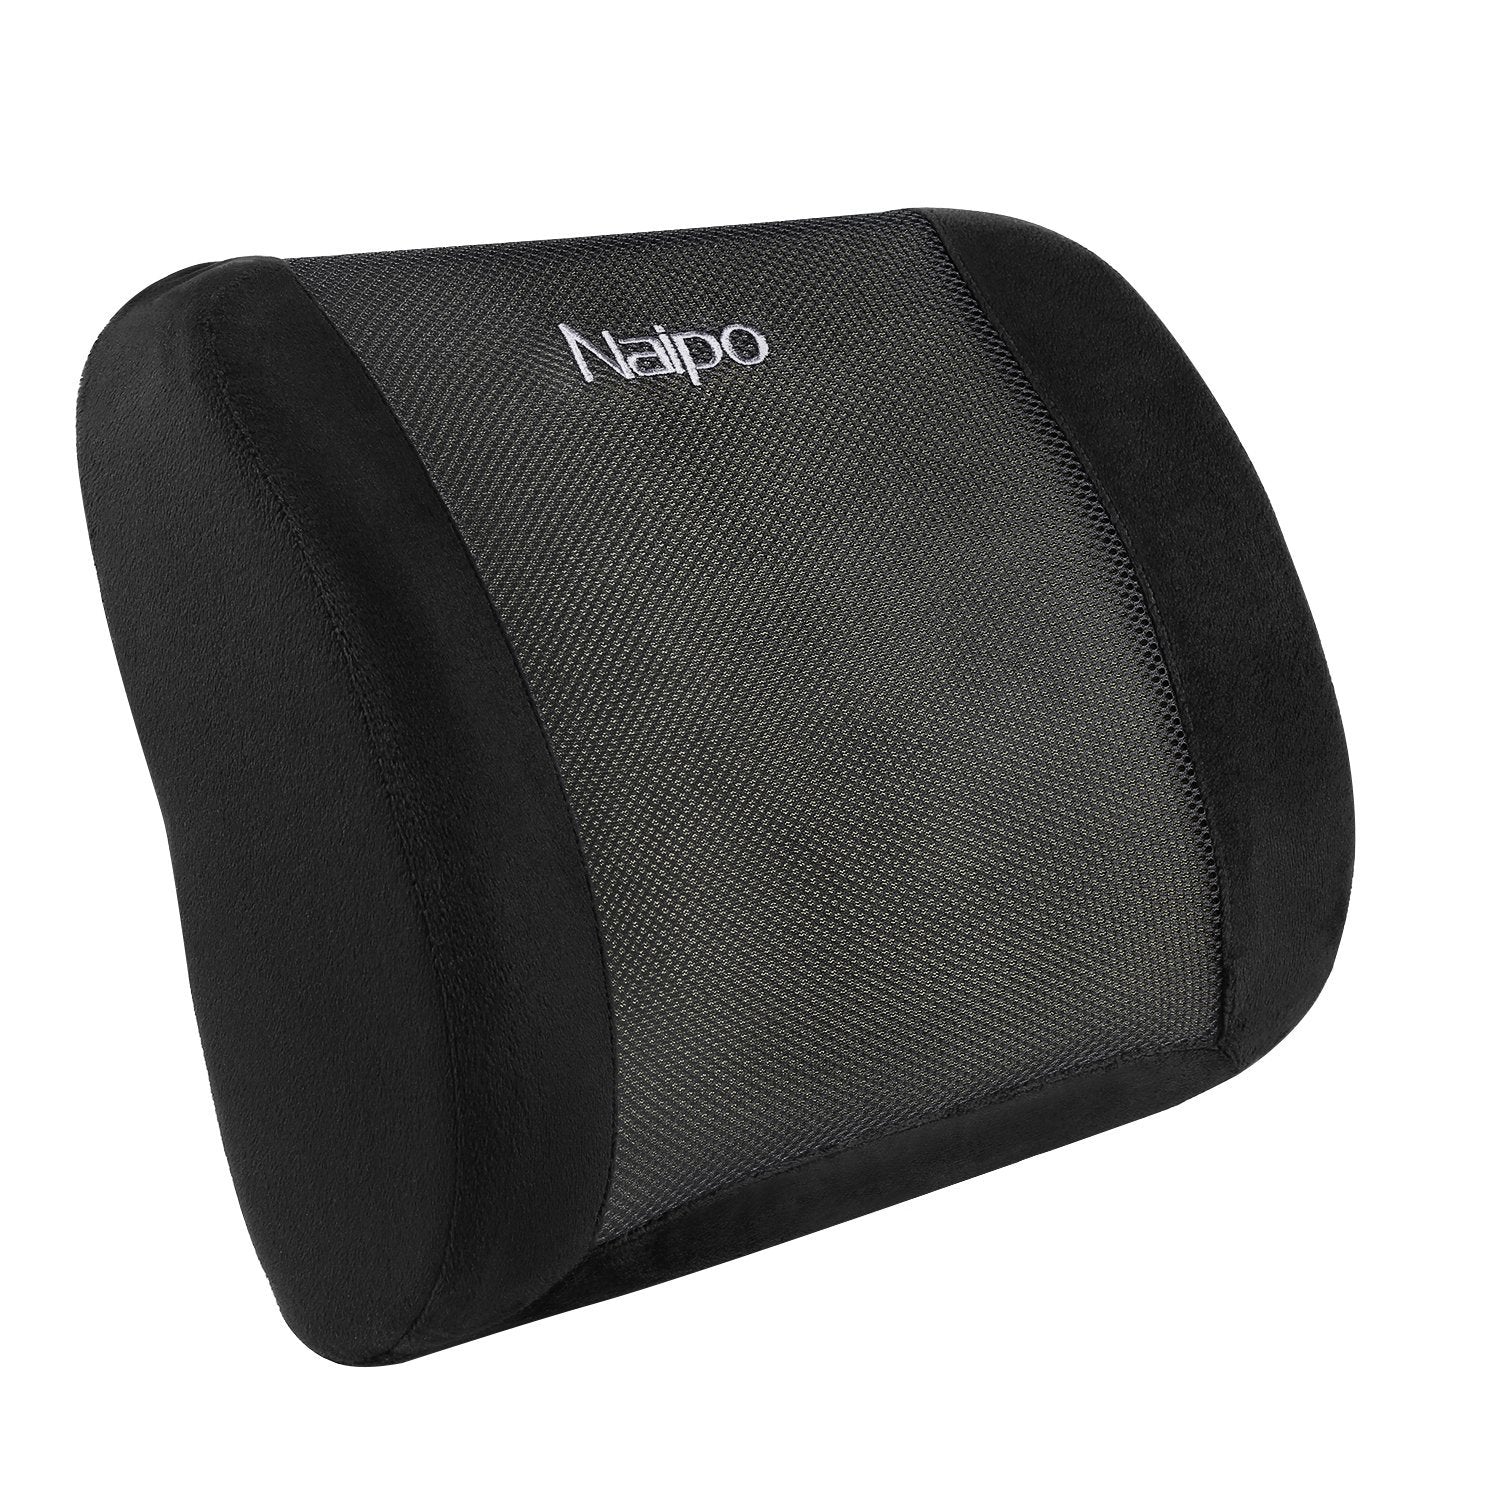 Neo Cushion Lumbar Support Pillow Memory Foam 18"X9"X4.5"